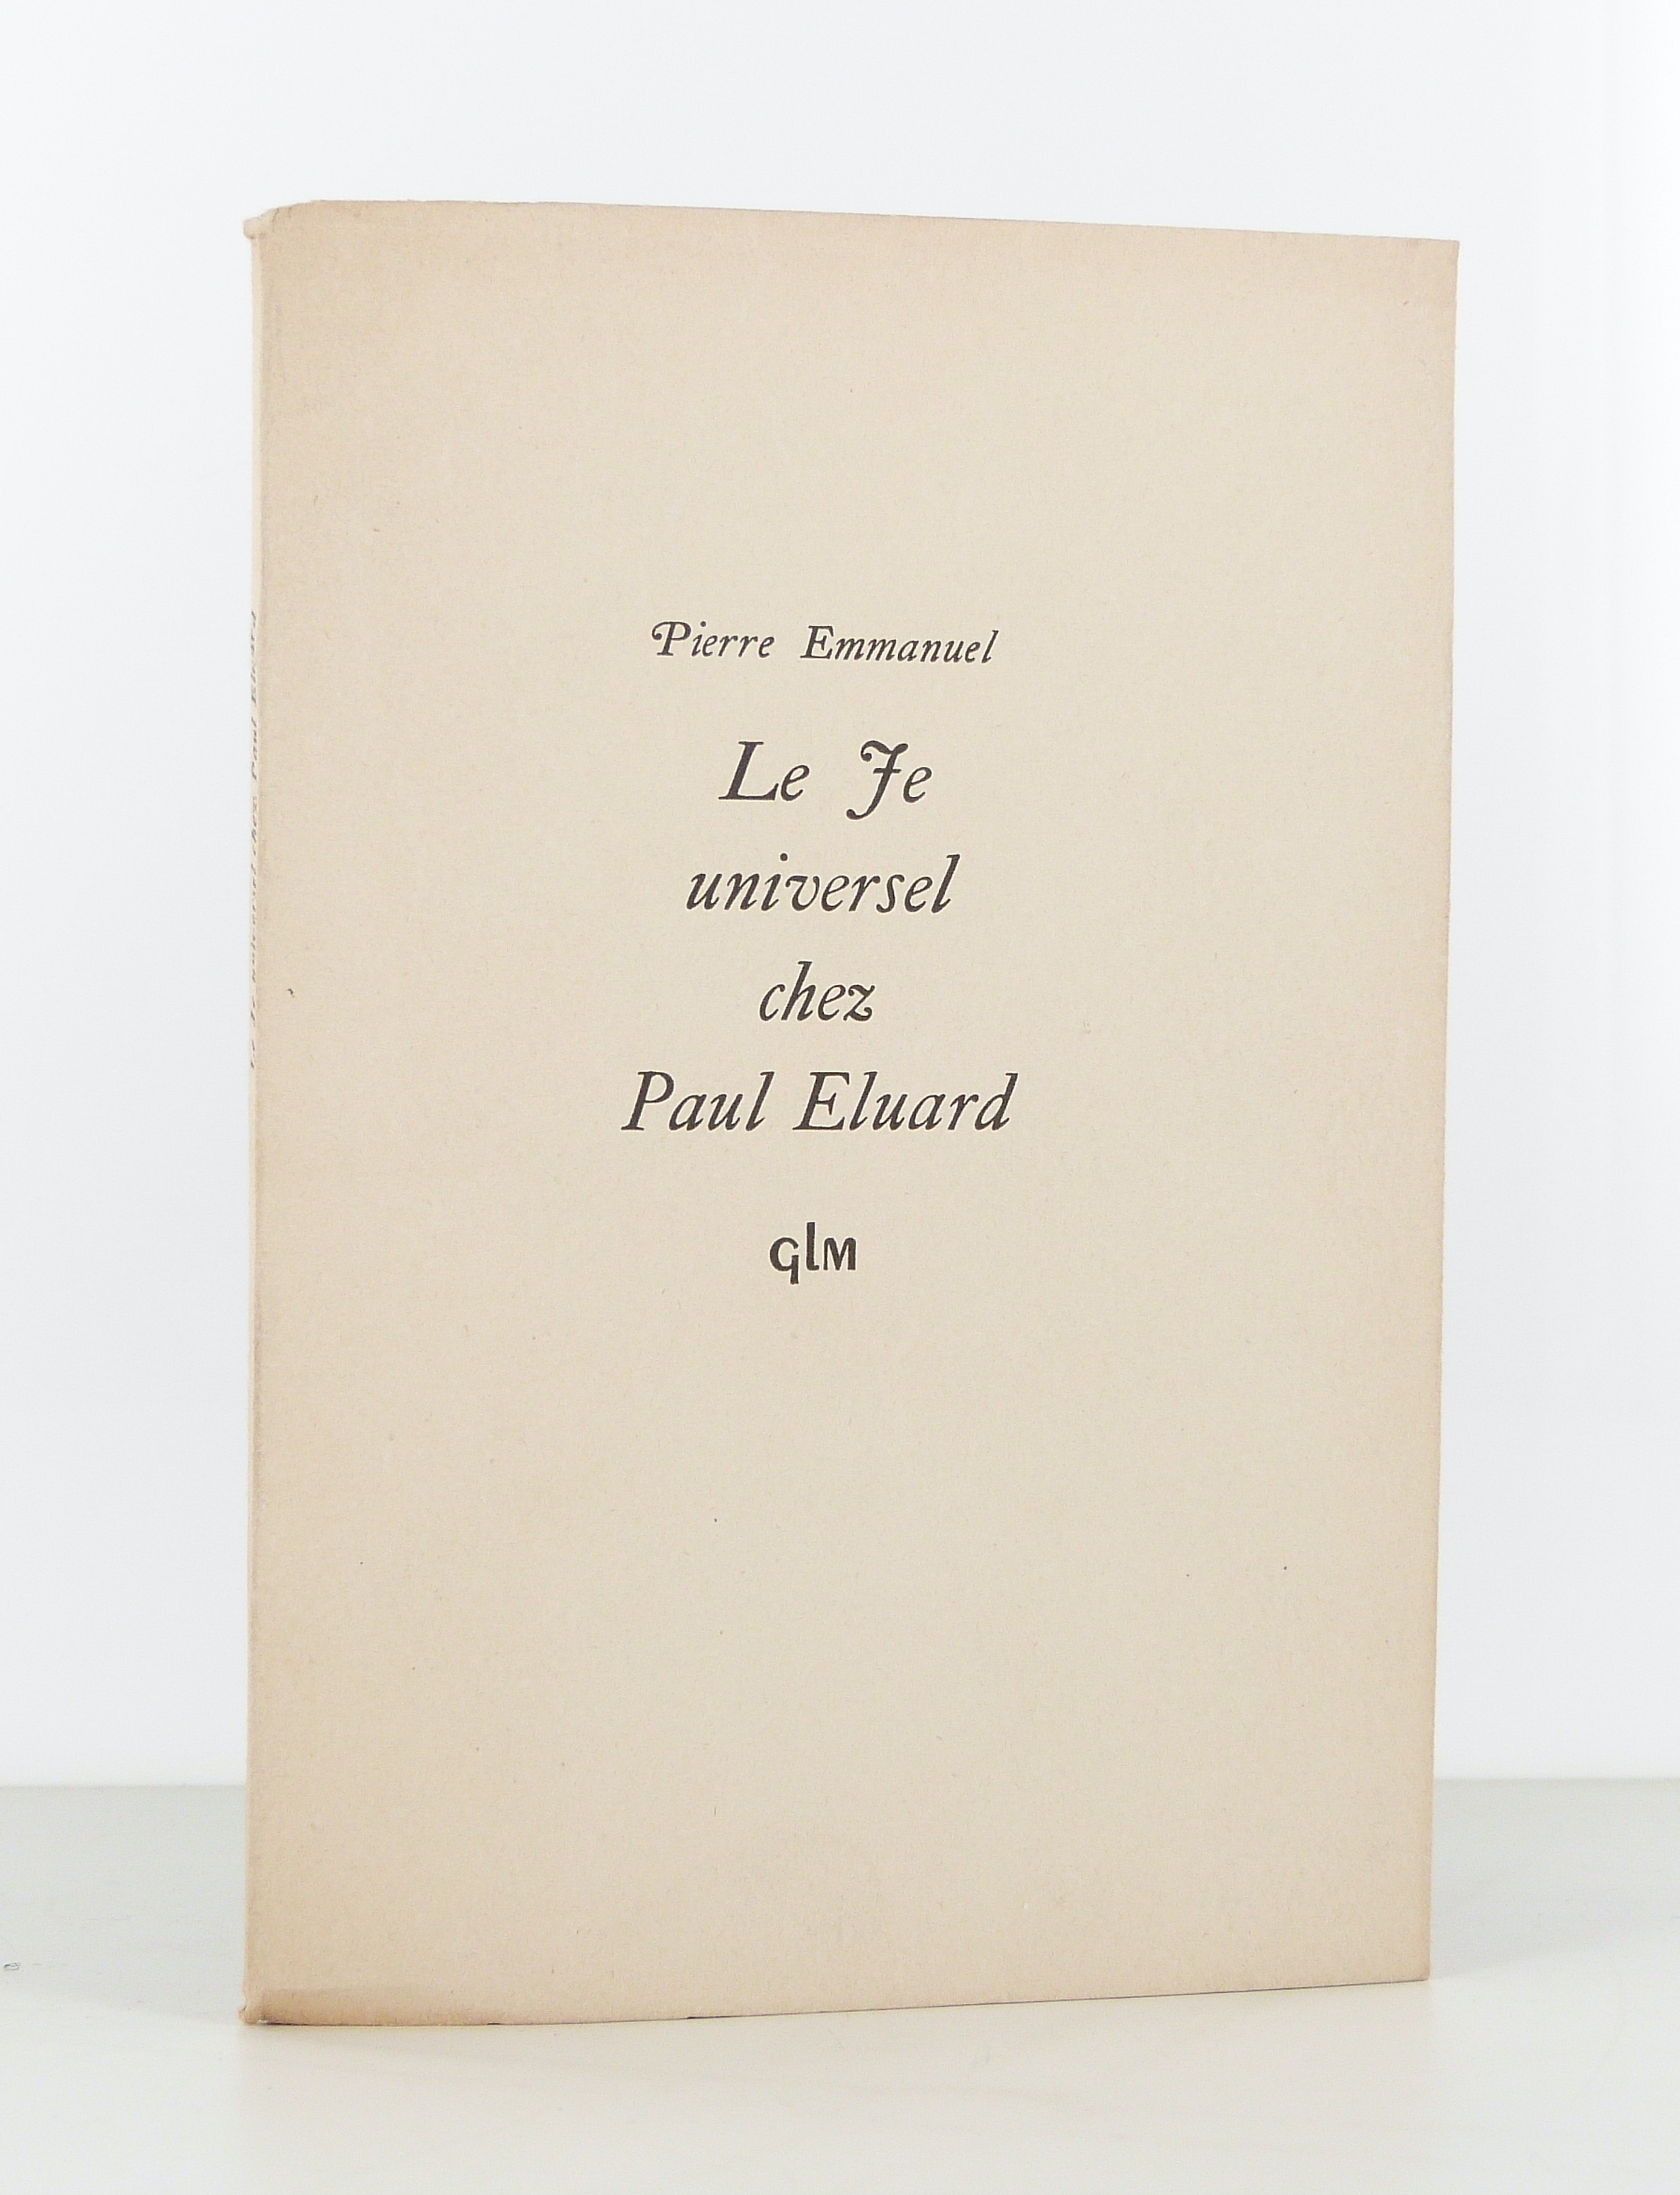 Le Je universel chez Paul Eluard